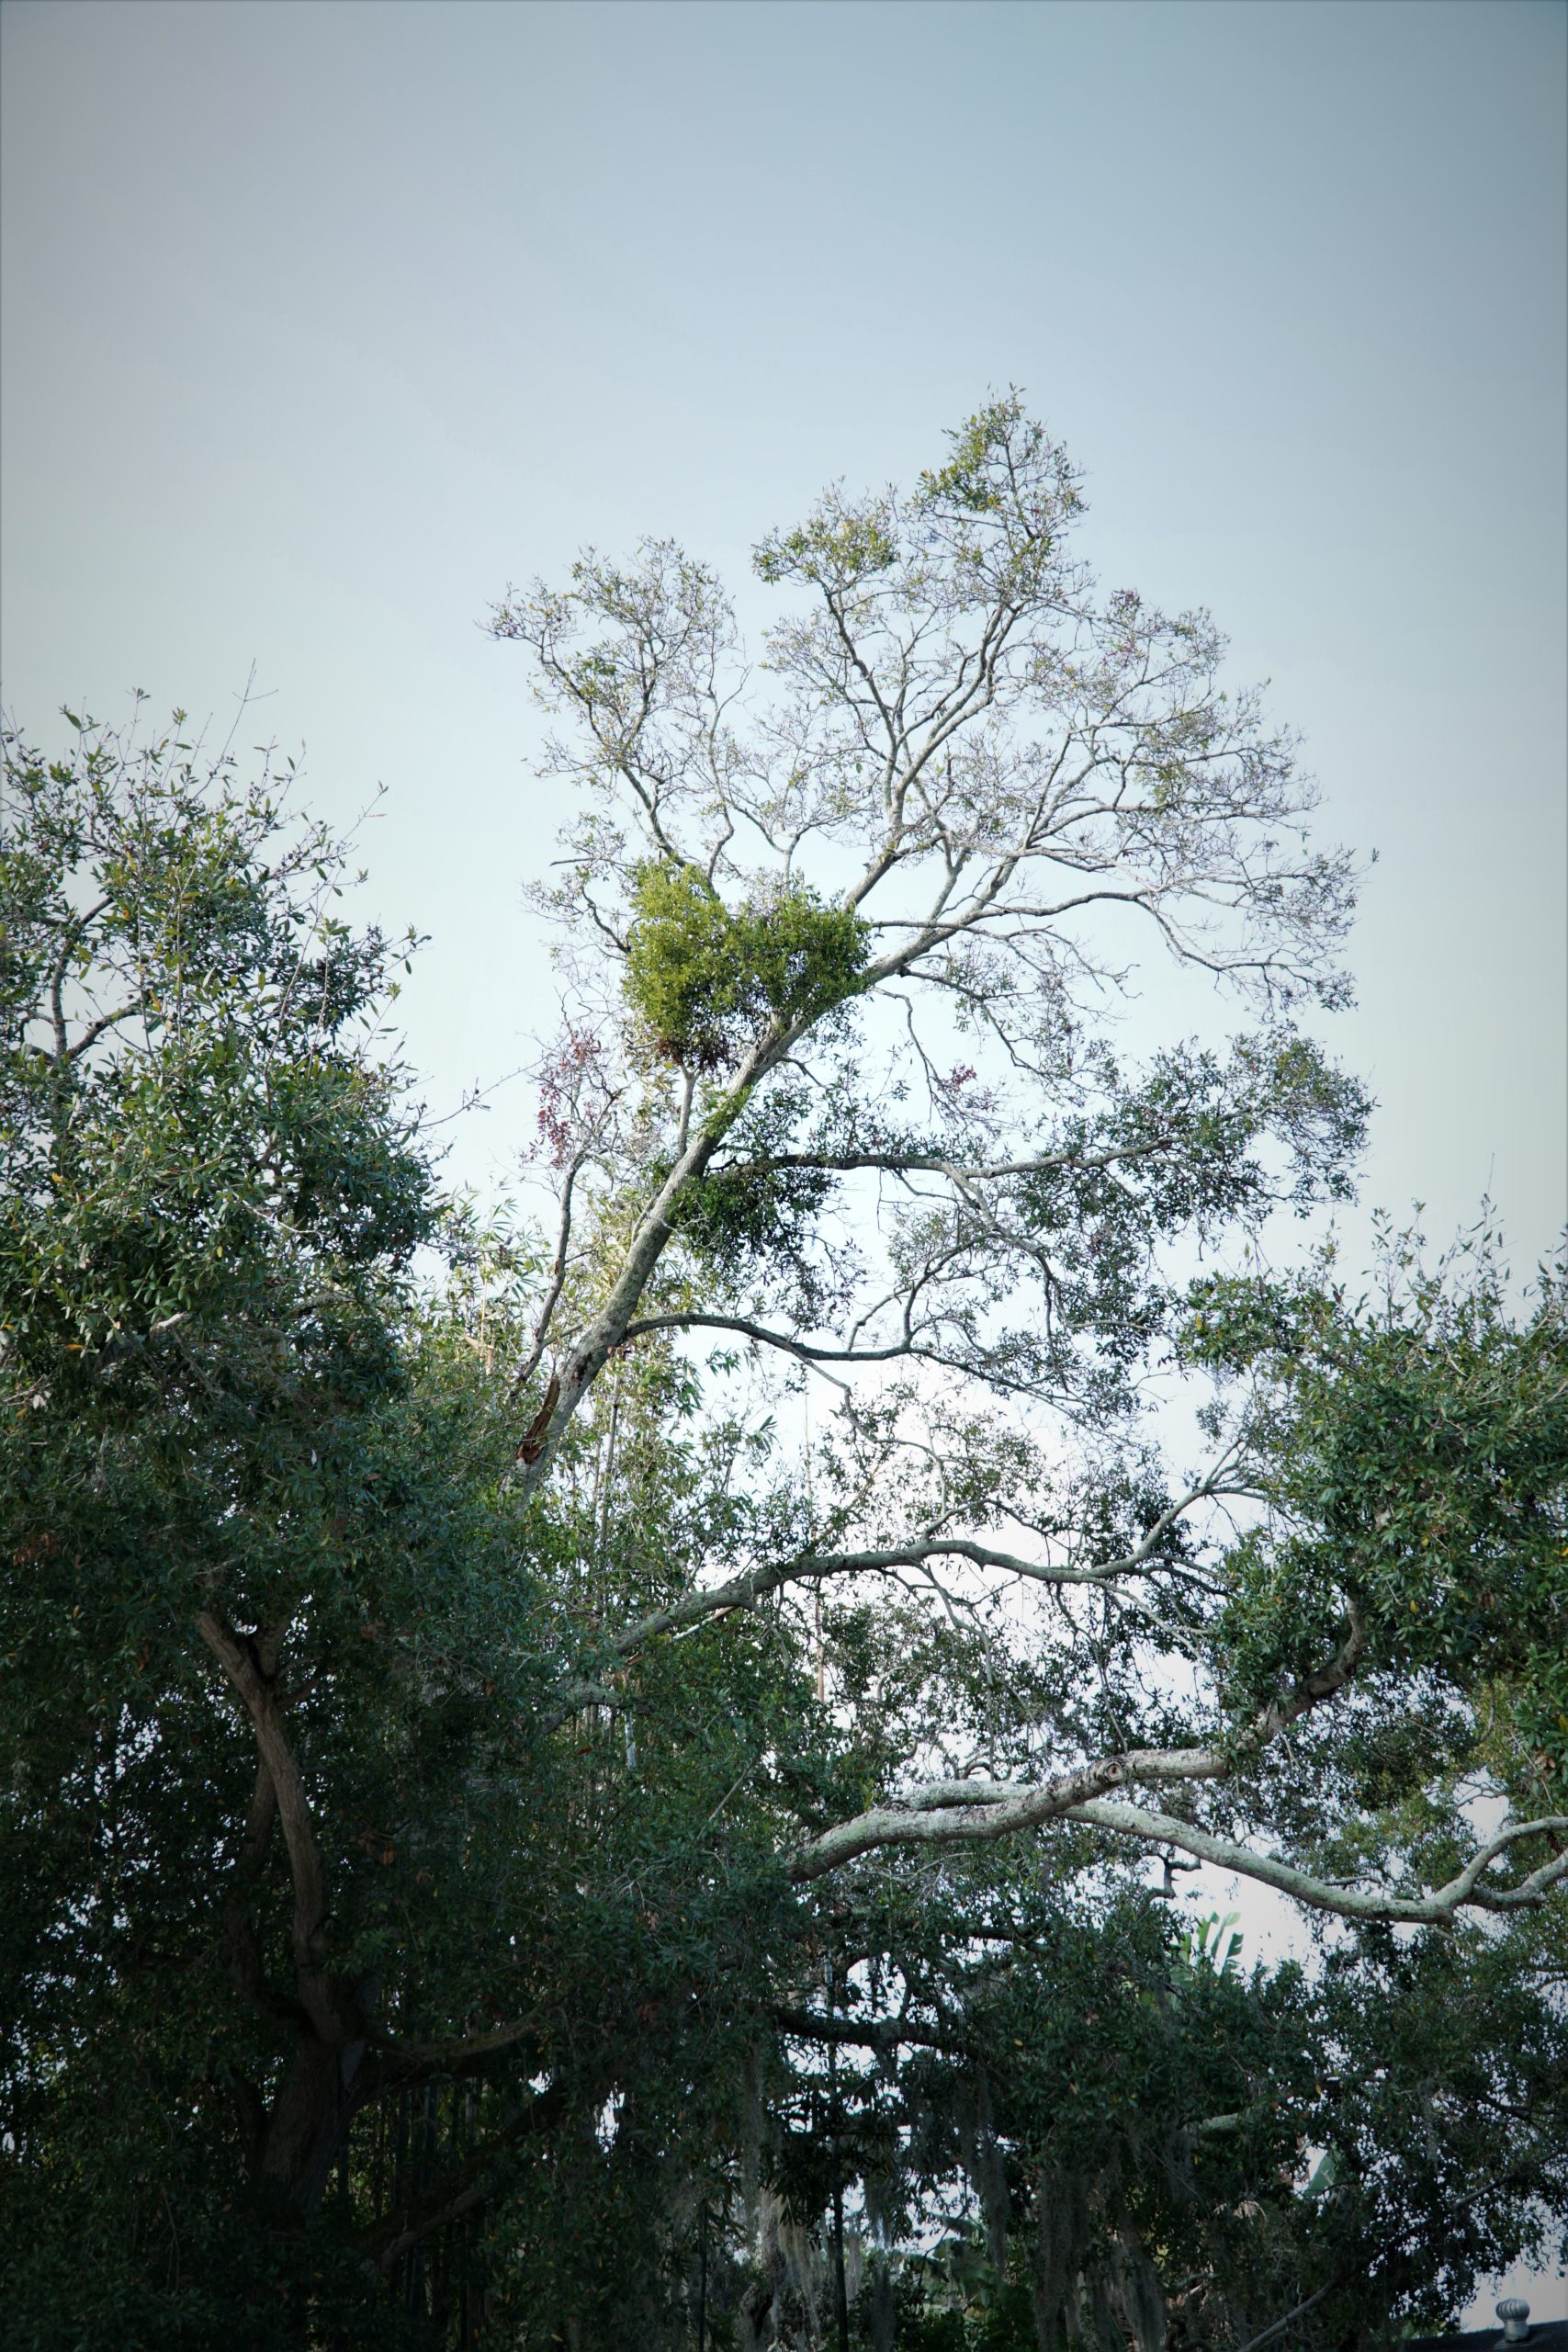 Eastern mistletoe in a tall oak tree